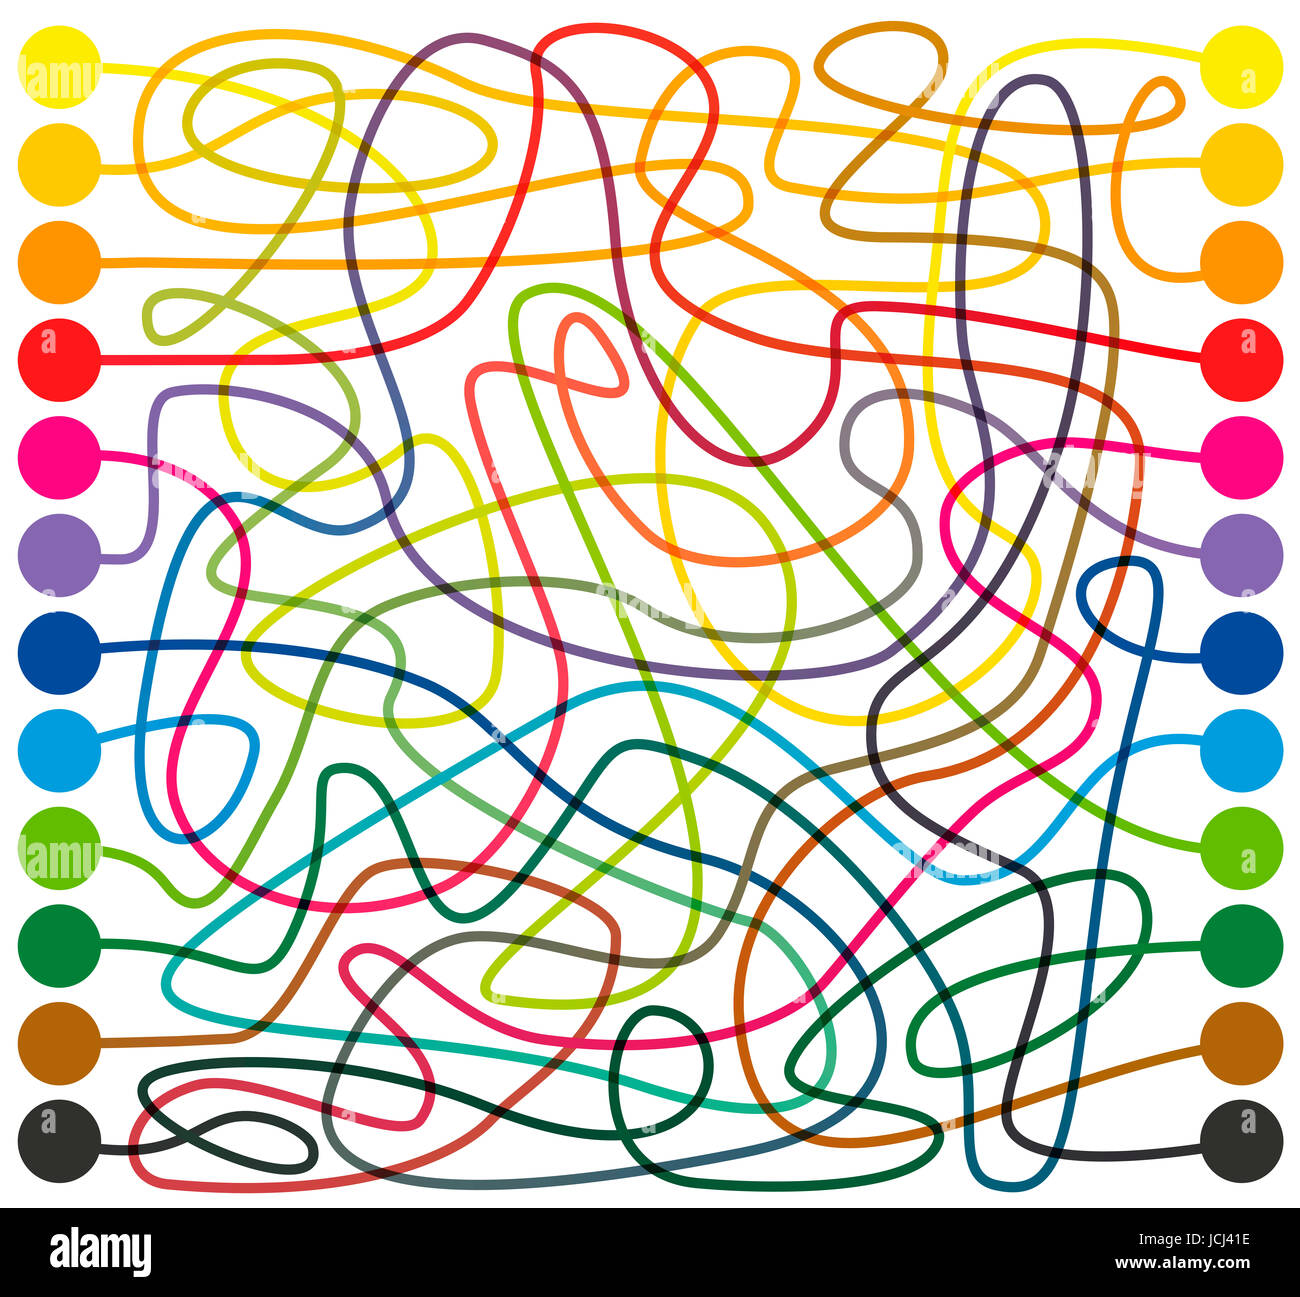 Labyrinthe, de lignes de couleur - connecter les points de couleur, de trouver le bon chemin à travers les complexités du labyrinthe coloré d'un bout à l'autre. Banque D'Images